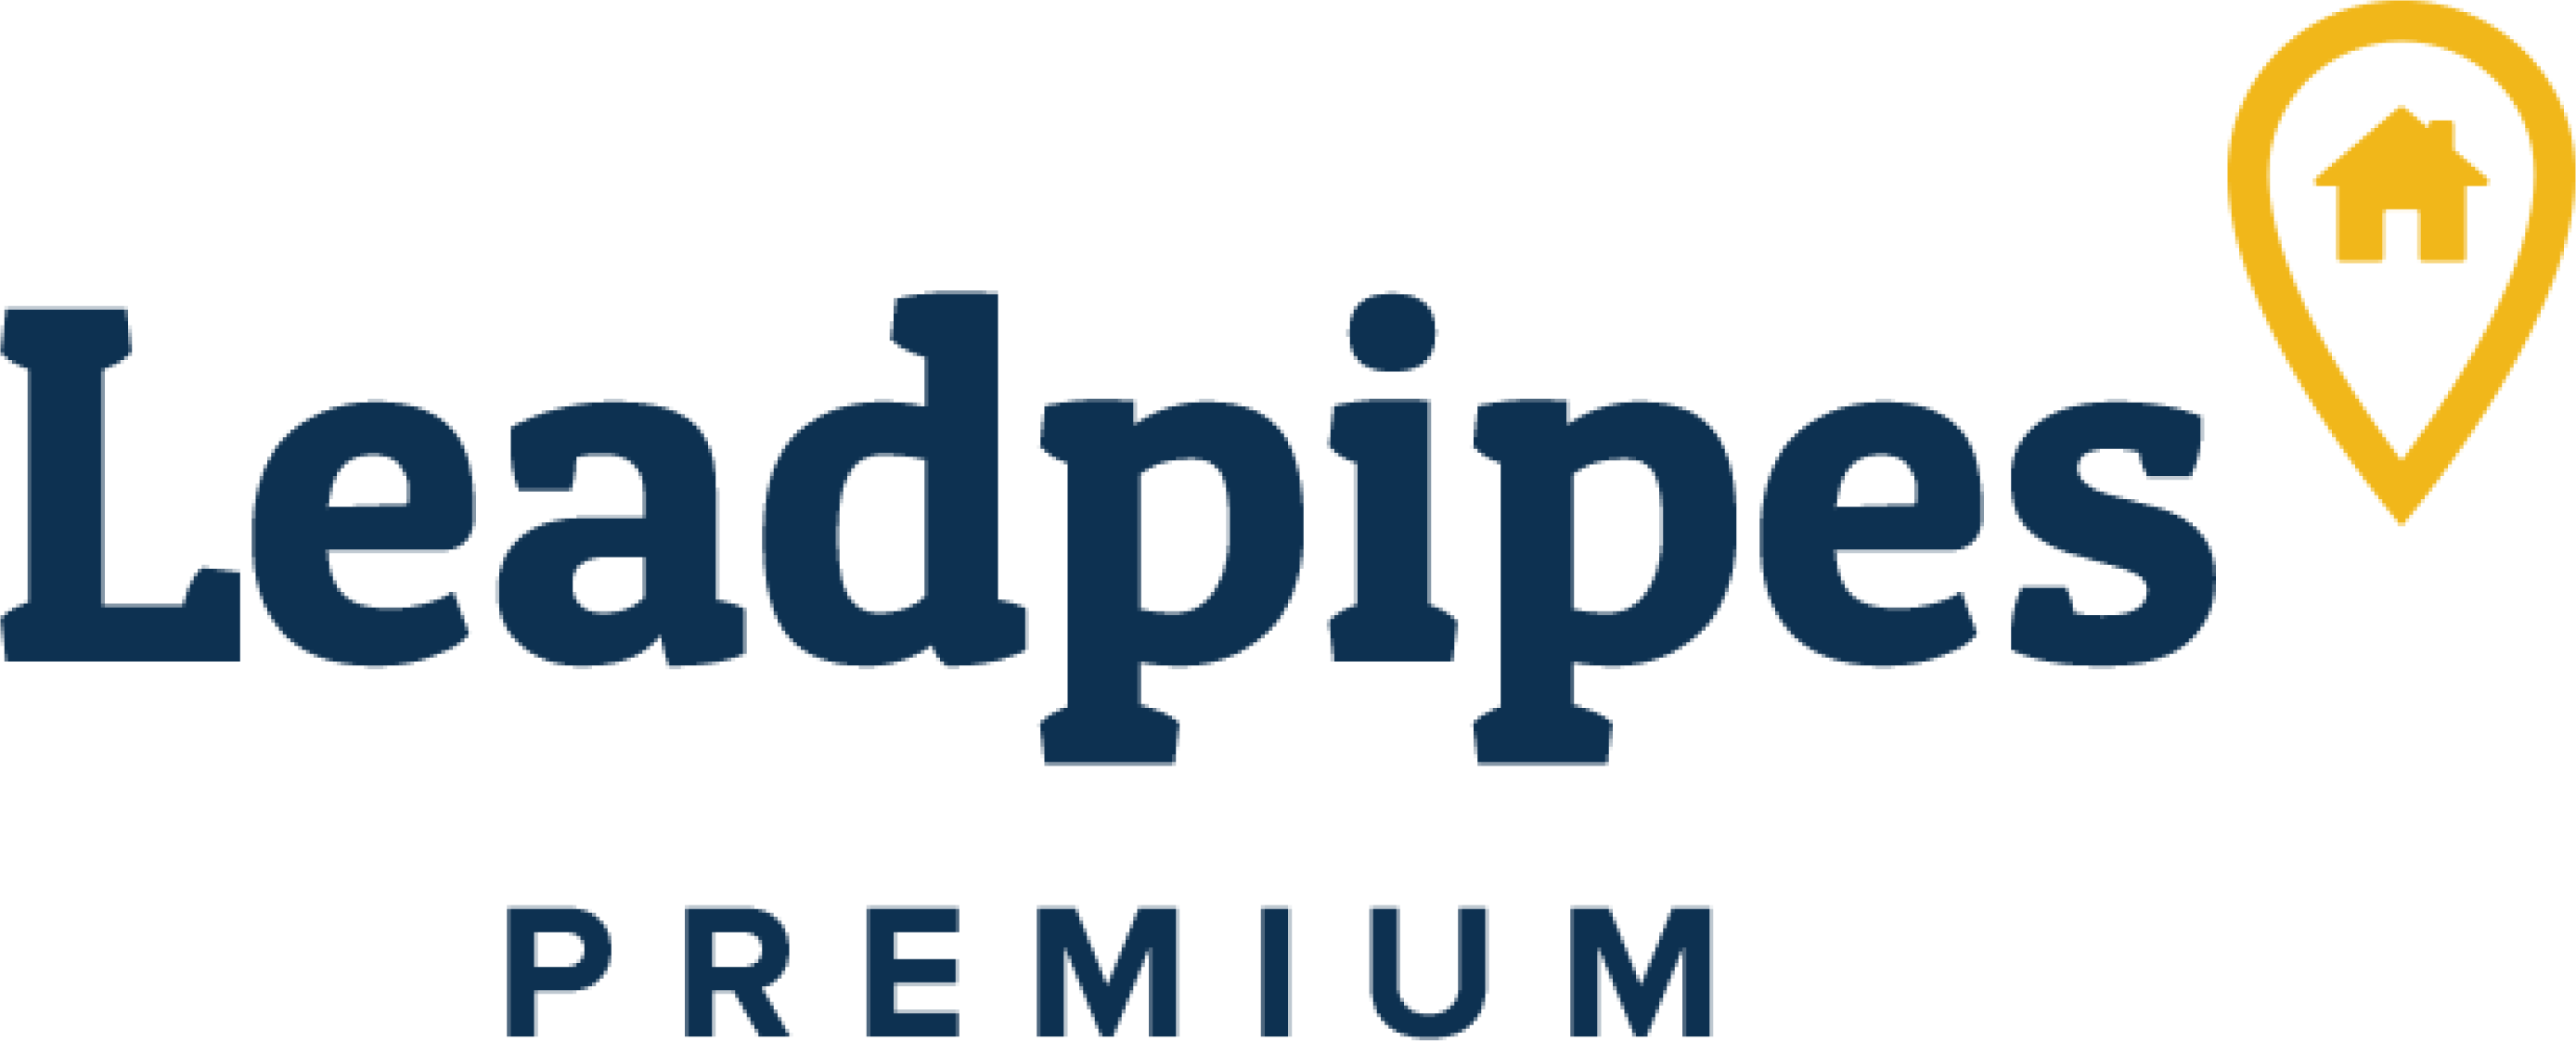 Leadpipes Premium Renatus IOS